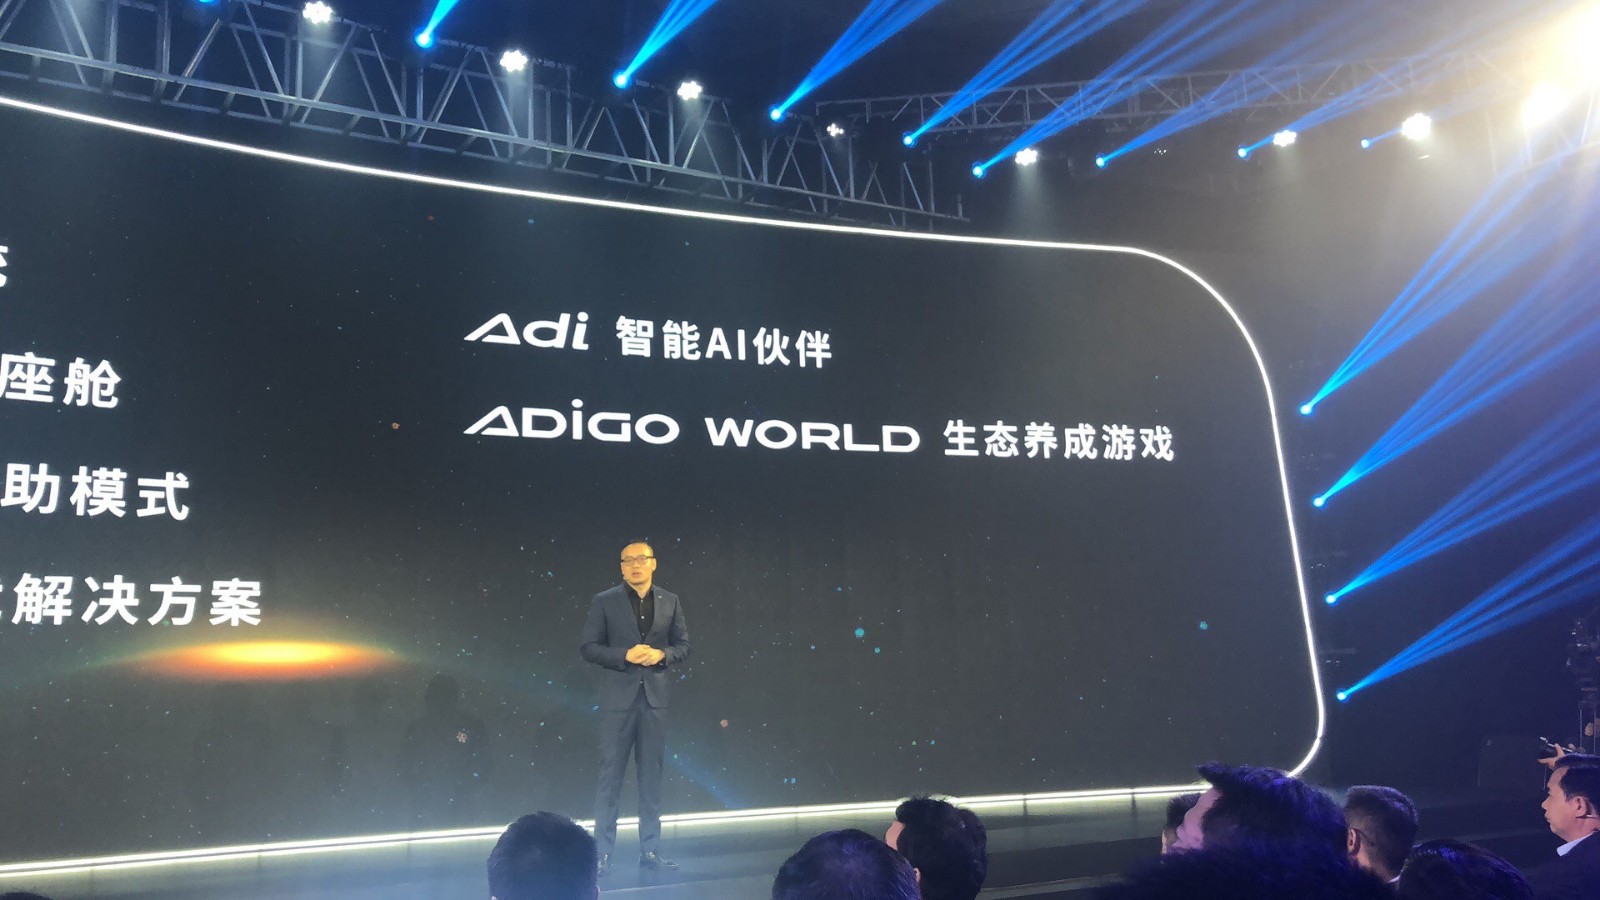 广汽新能源发布ADiGO生态系统 实现L3级自动驾驶